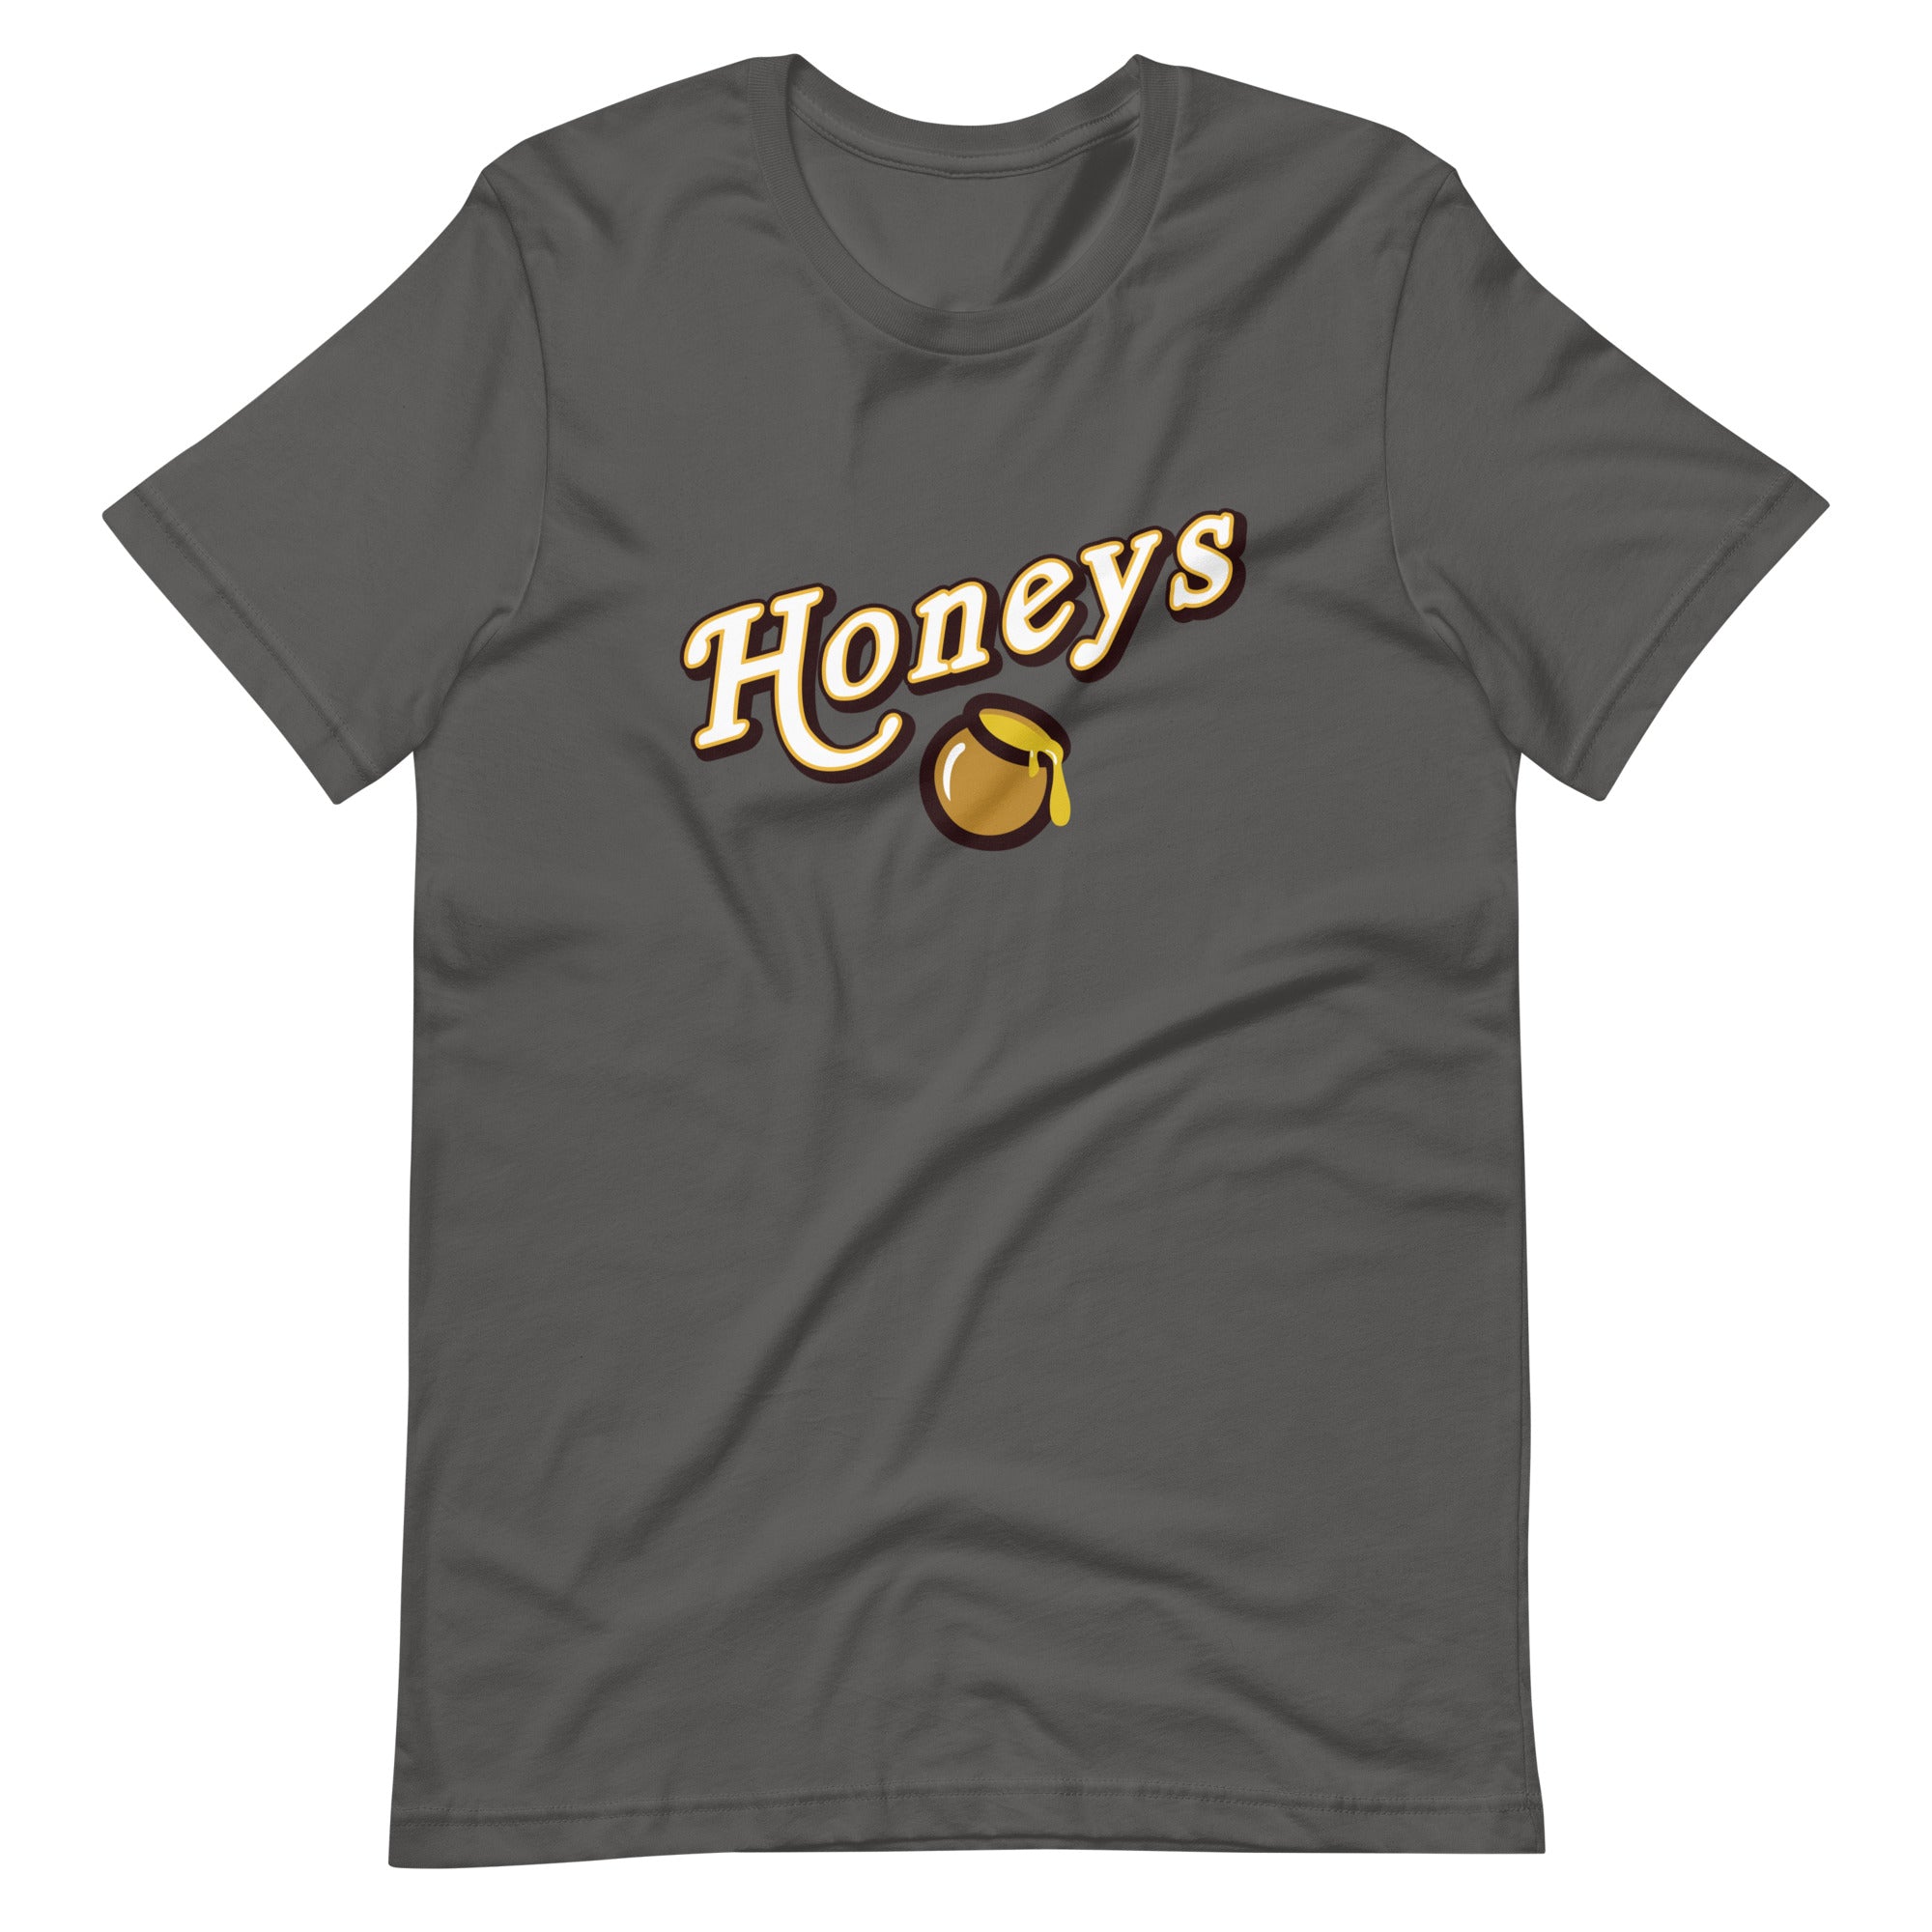 Mike Sorrentino Honeys Shirt